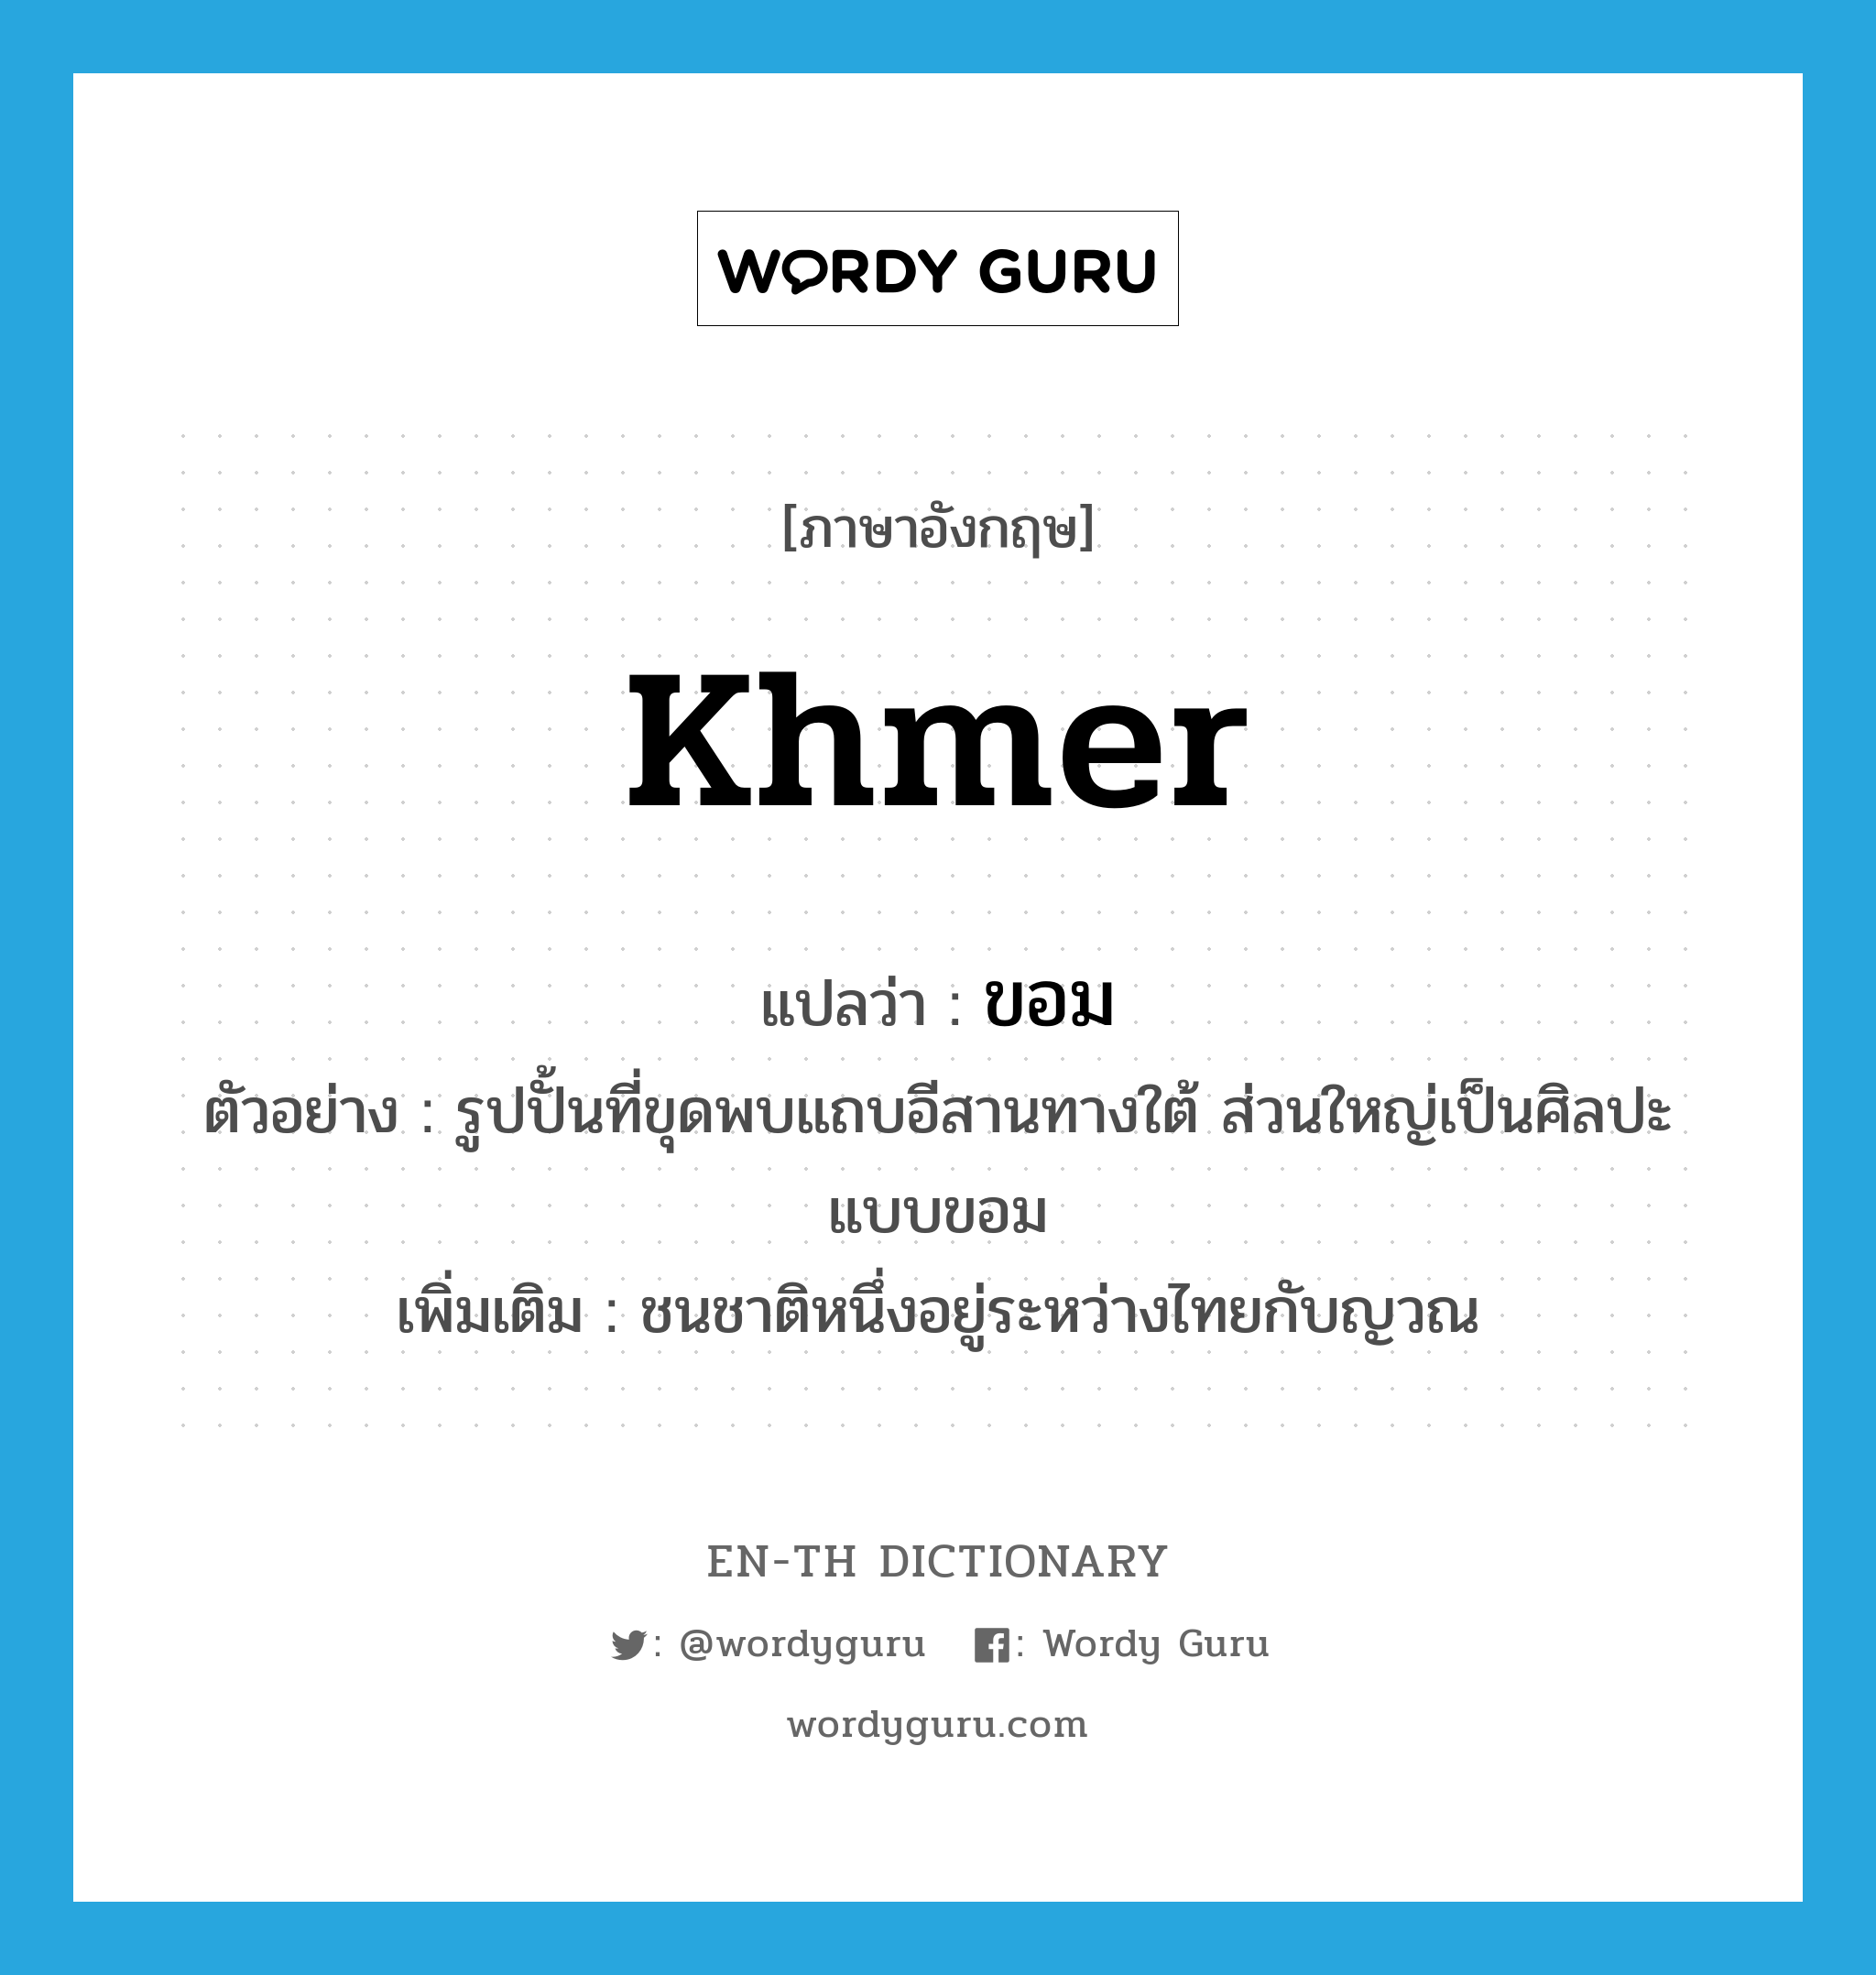 Khmer แปลว่า?, คำศัพท์ภาษาอังกฤษ Khmer แปลว่า ขอม ประเภท N ตัวอย่าง รูปปั้นที่ขุดพบแถบอีสานทางใต้ ส่วนใหญ่เป็นศิลปะแบบขอม เพิ่มเติม ชนชาติหนึ่งอยู่ระหว่างไทยกับญวณ หมวด N